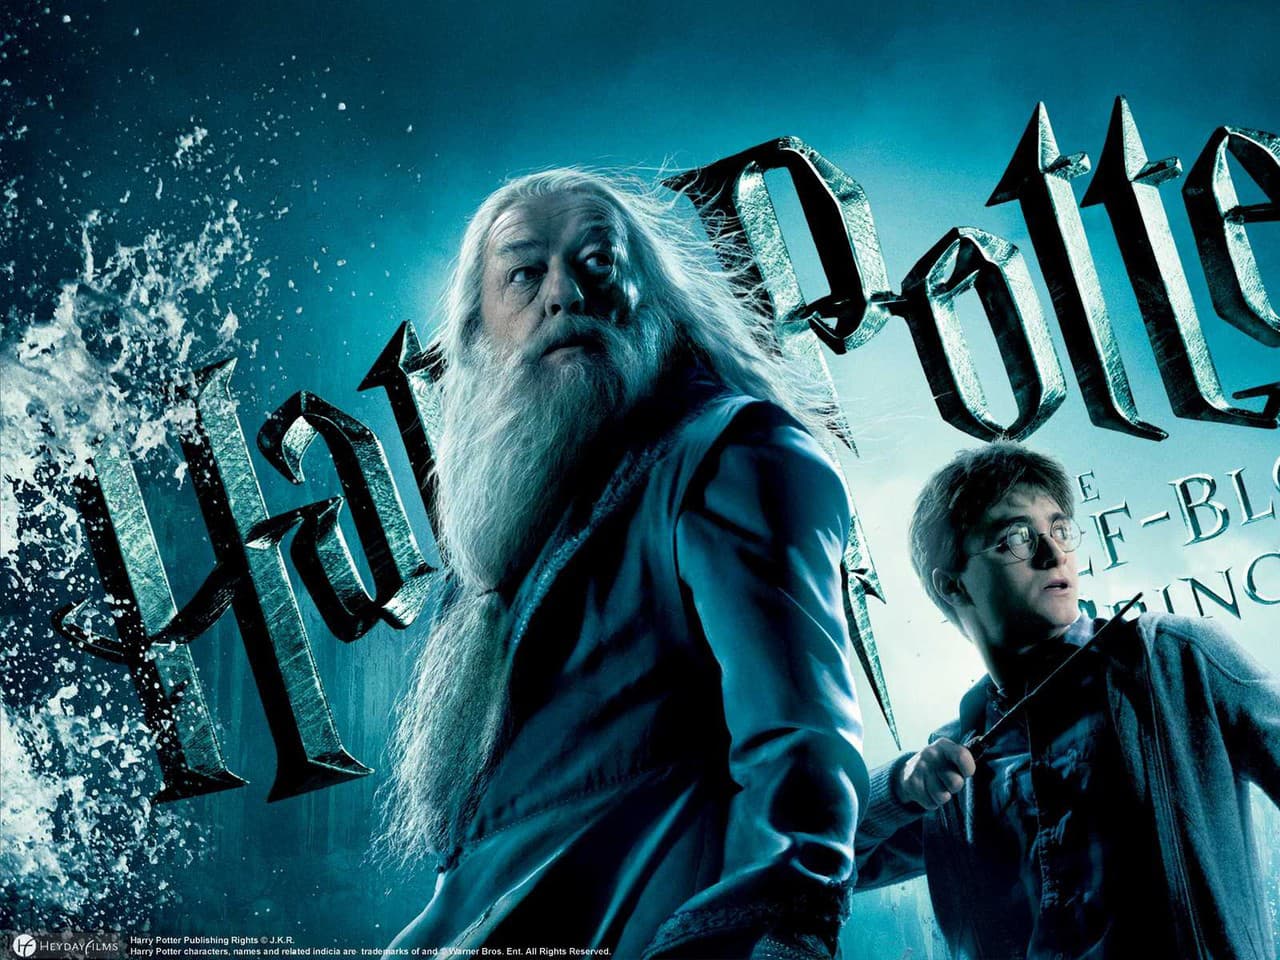 Harry Potter a Polovičný princ